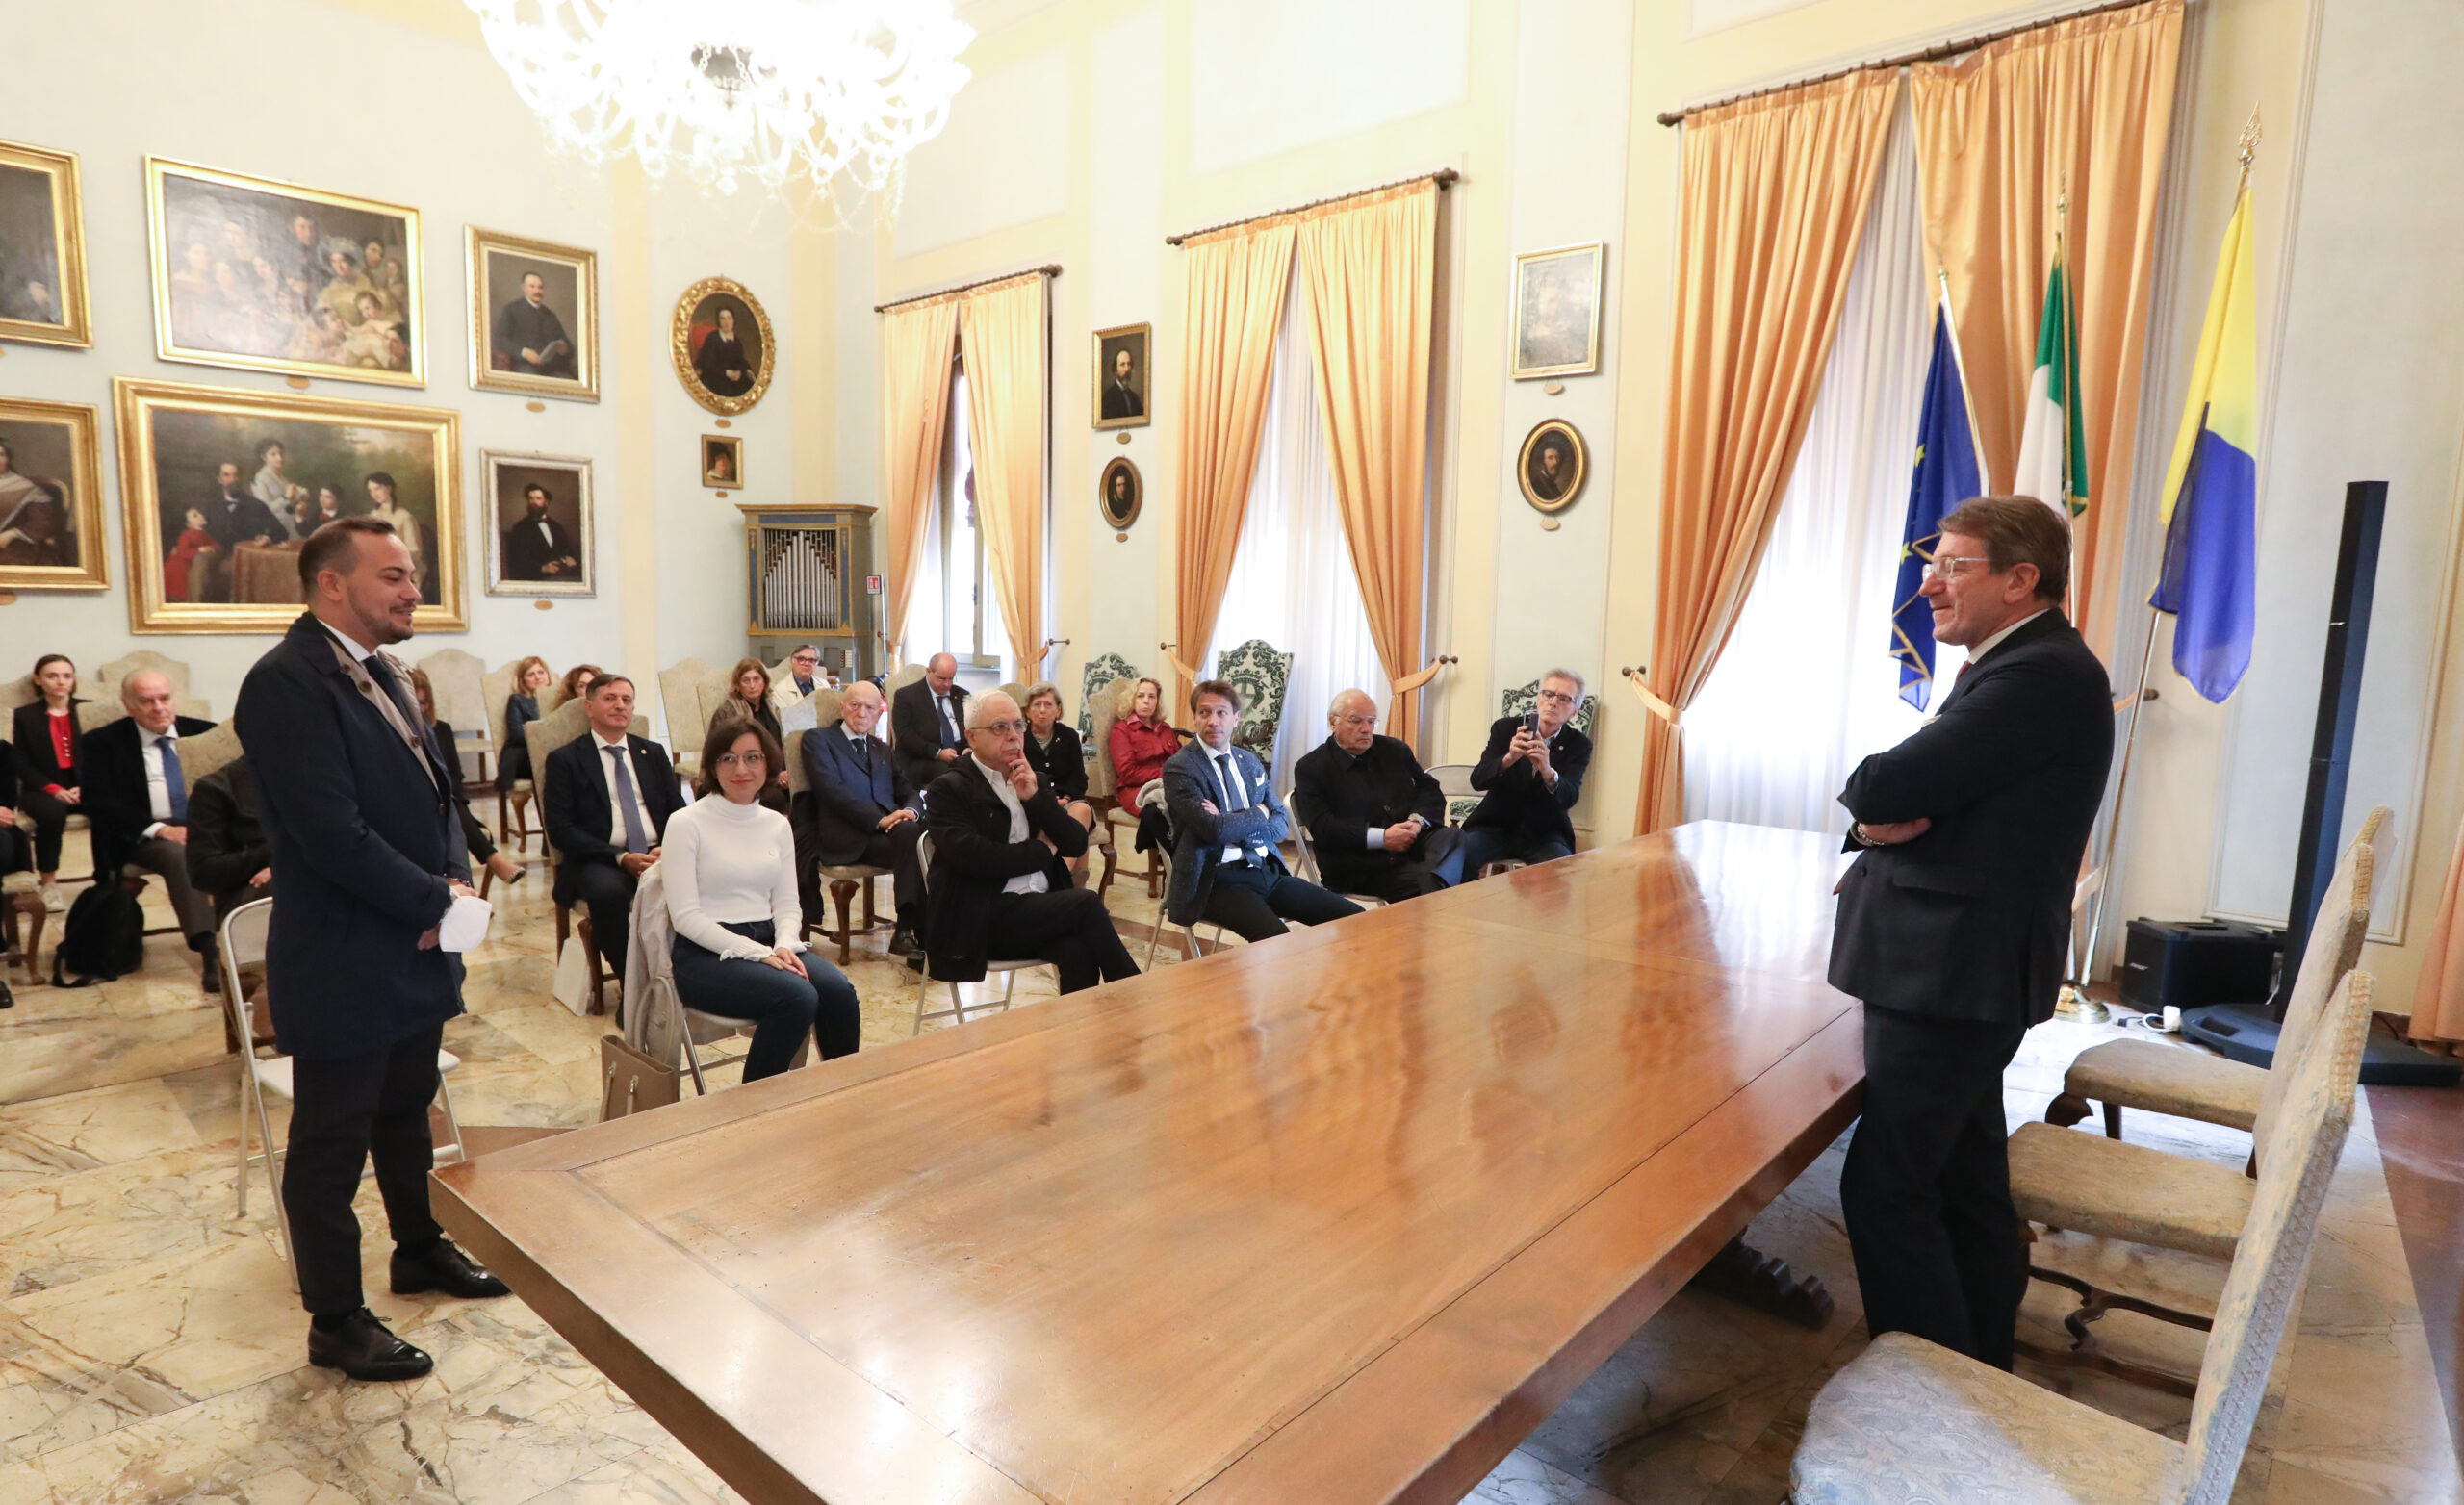  In municipio i nuovi presidenti Lions di Modena